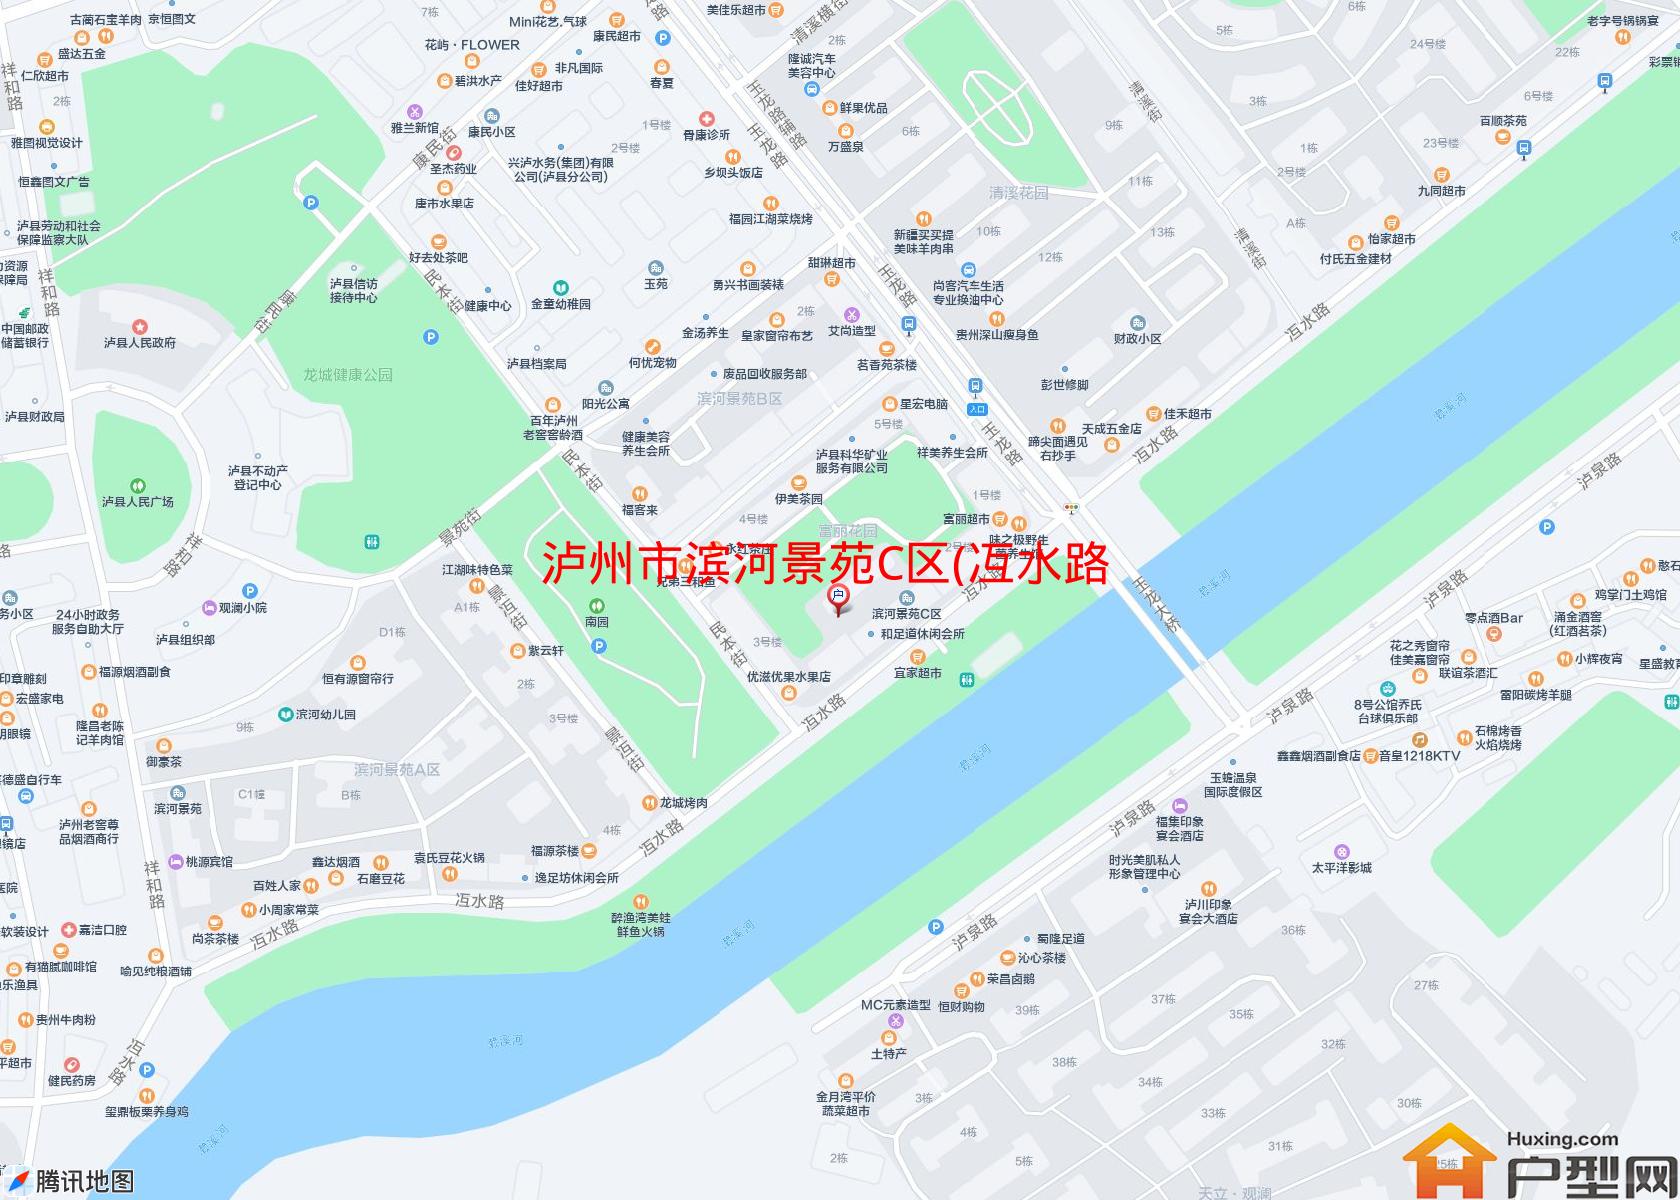 滨河景苑C区(冱水路)小区 - 户型网